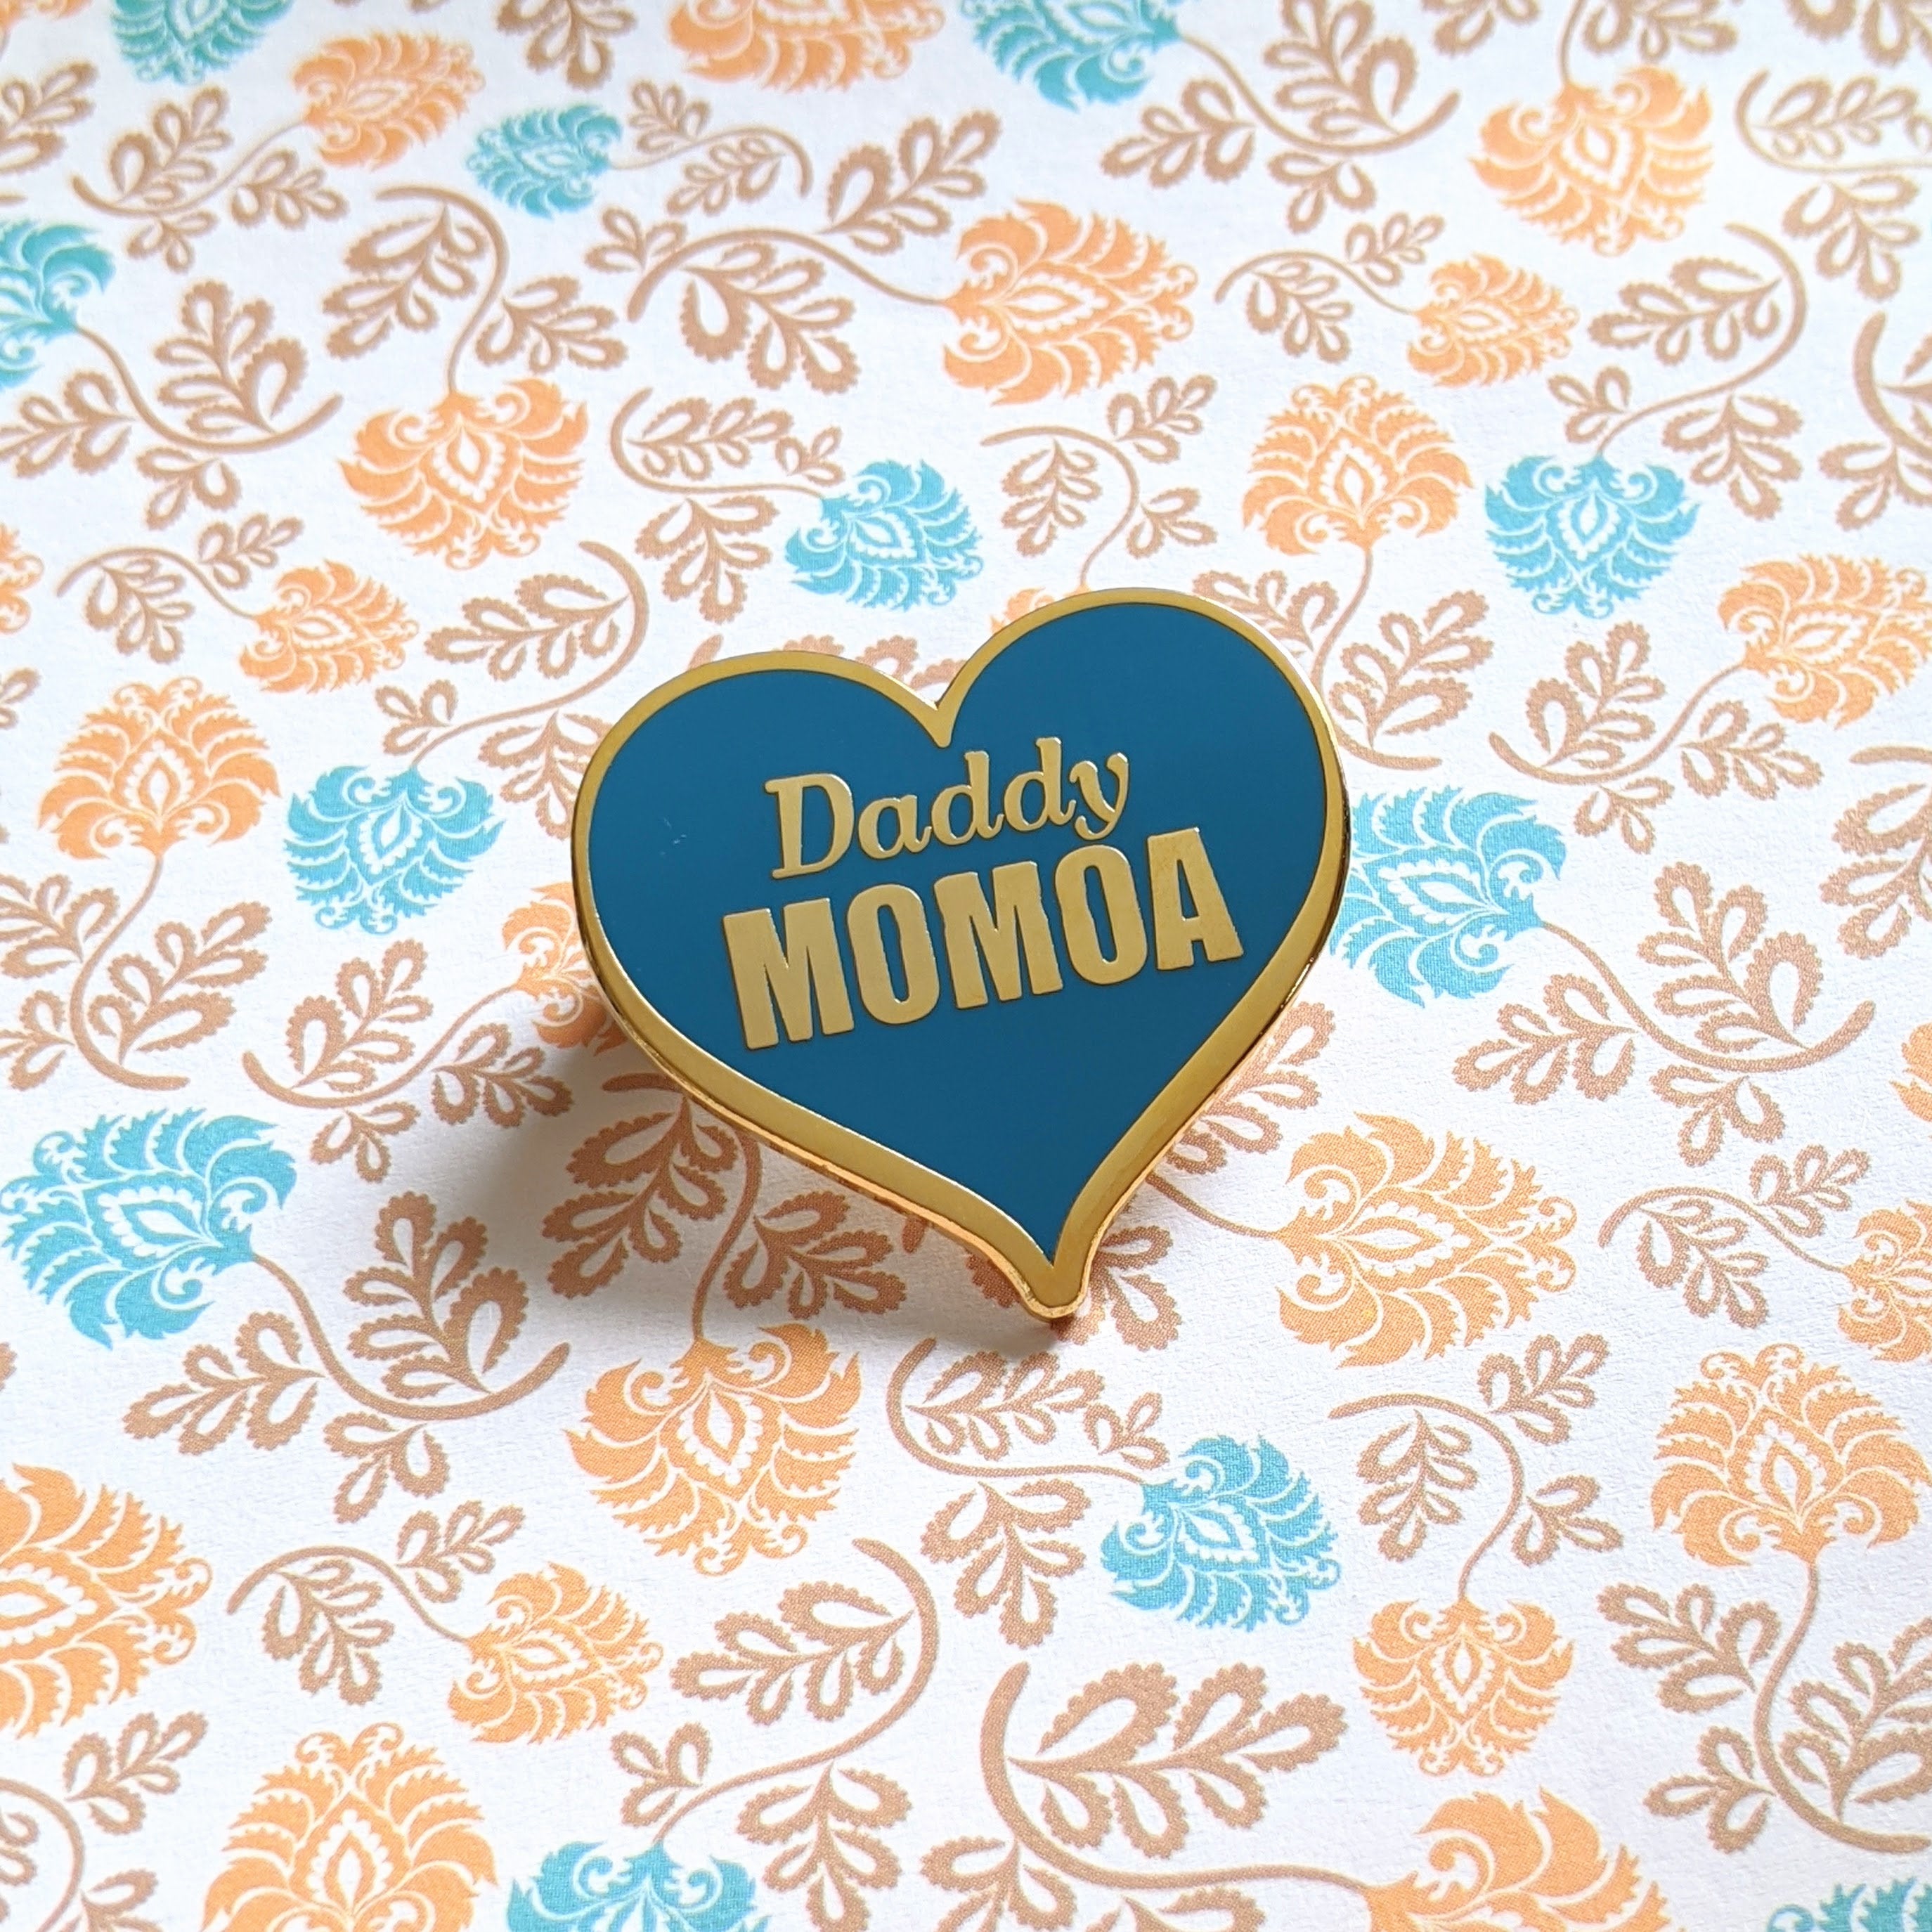 Daddy Momoa hard enamel pin